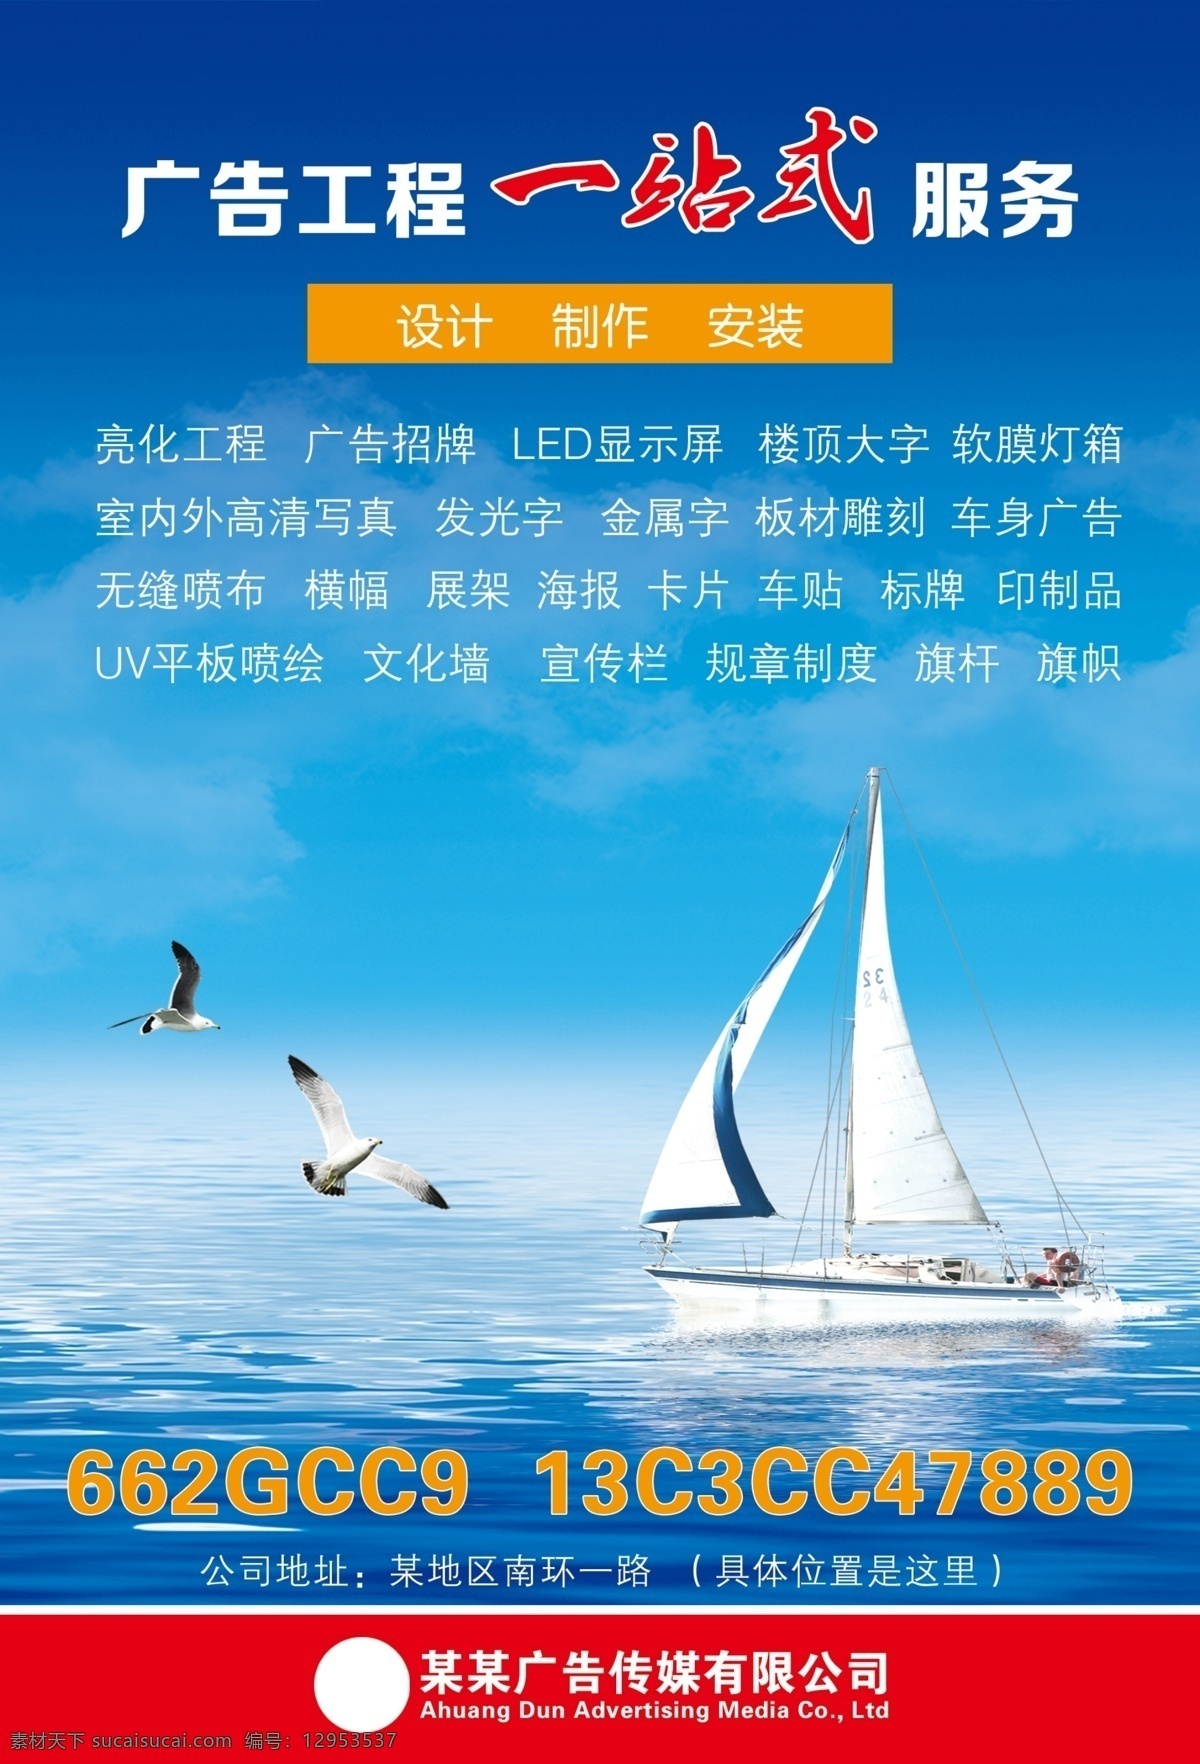 蓝色 海洋 船只 广告 背景 大海 海水 海浪 一帆风顺 海鸥 海鸟 天空 蓝天白云 企业 宣传册 海报 展架 各类广告素材 分层 背景素材